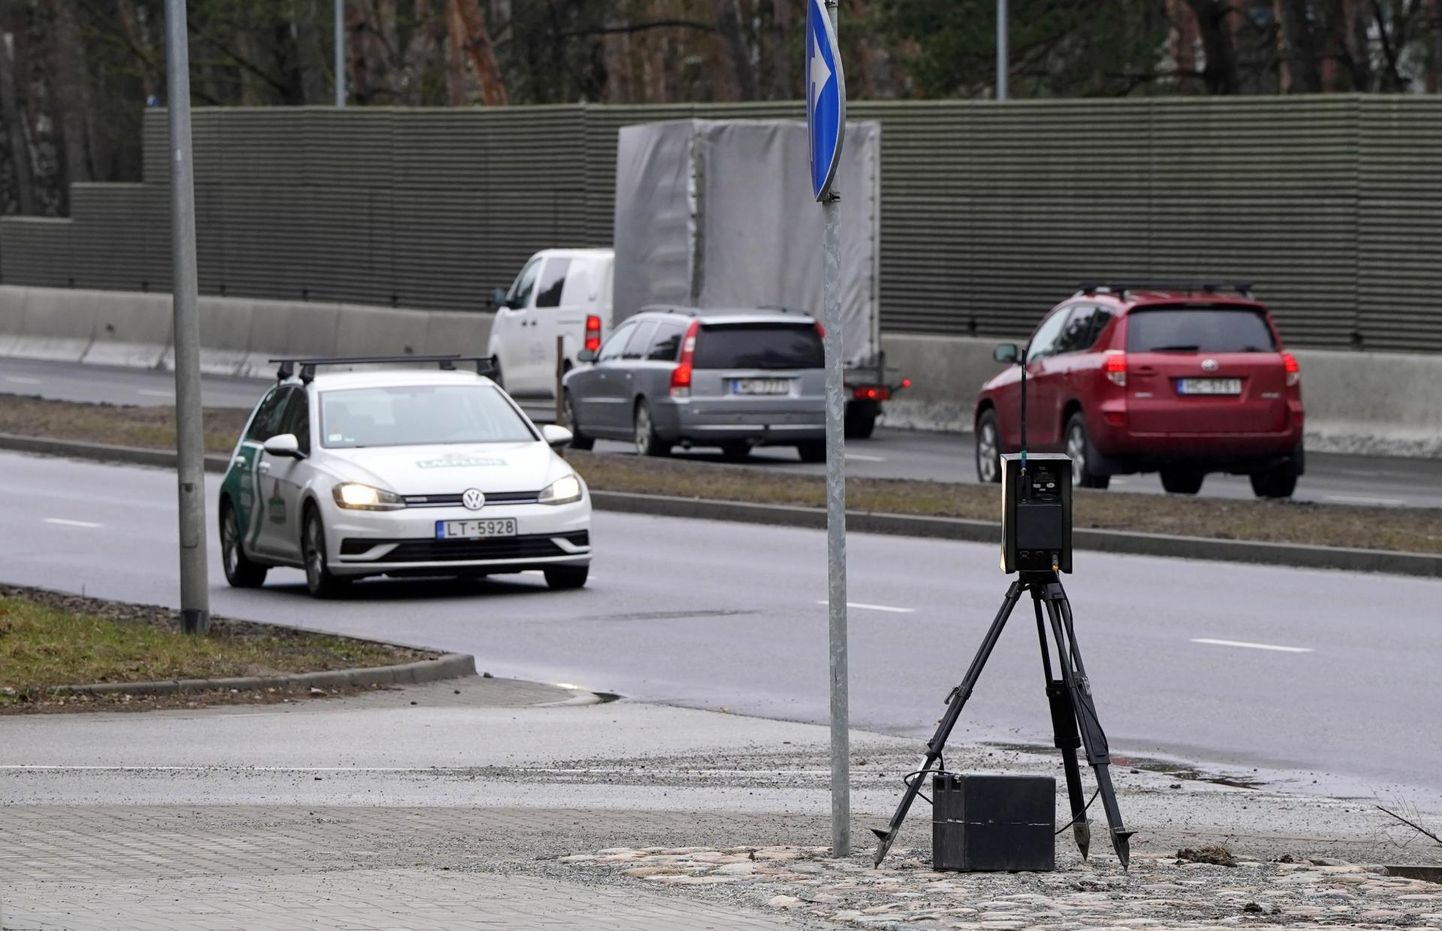 Mobiilne kiiruskaamera Riias. Läti on paigaldanud ka Eestisse viivatele maanteedele keskmise kiiruse kaamerad. 

 